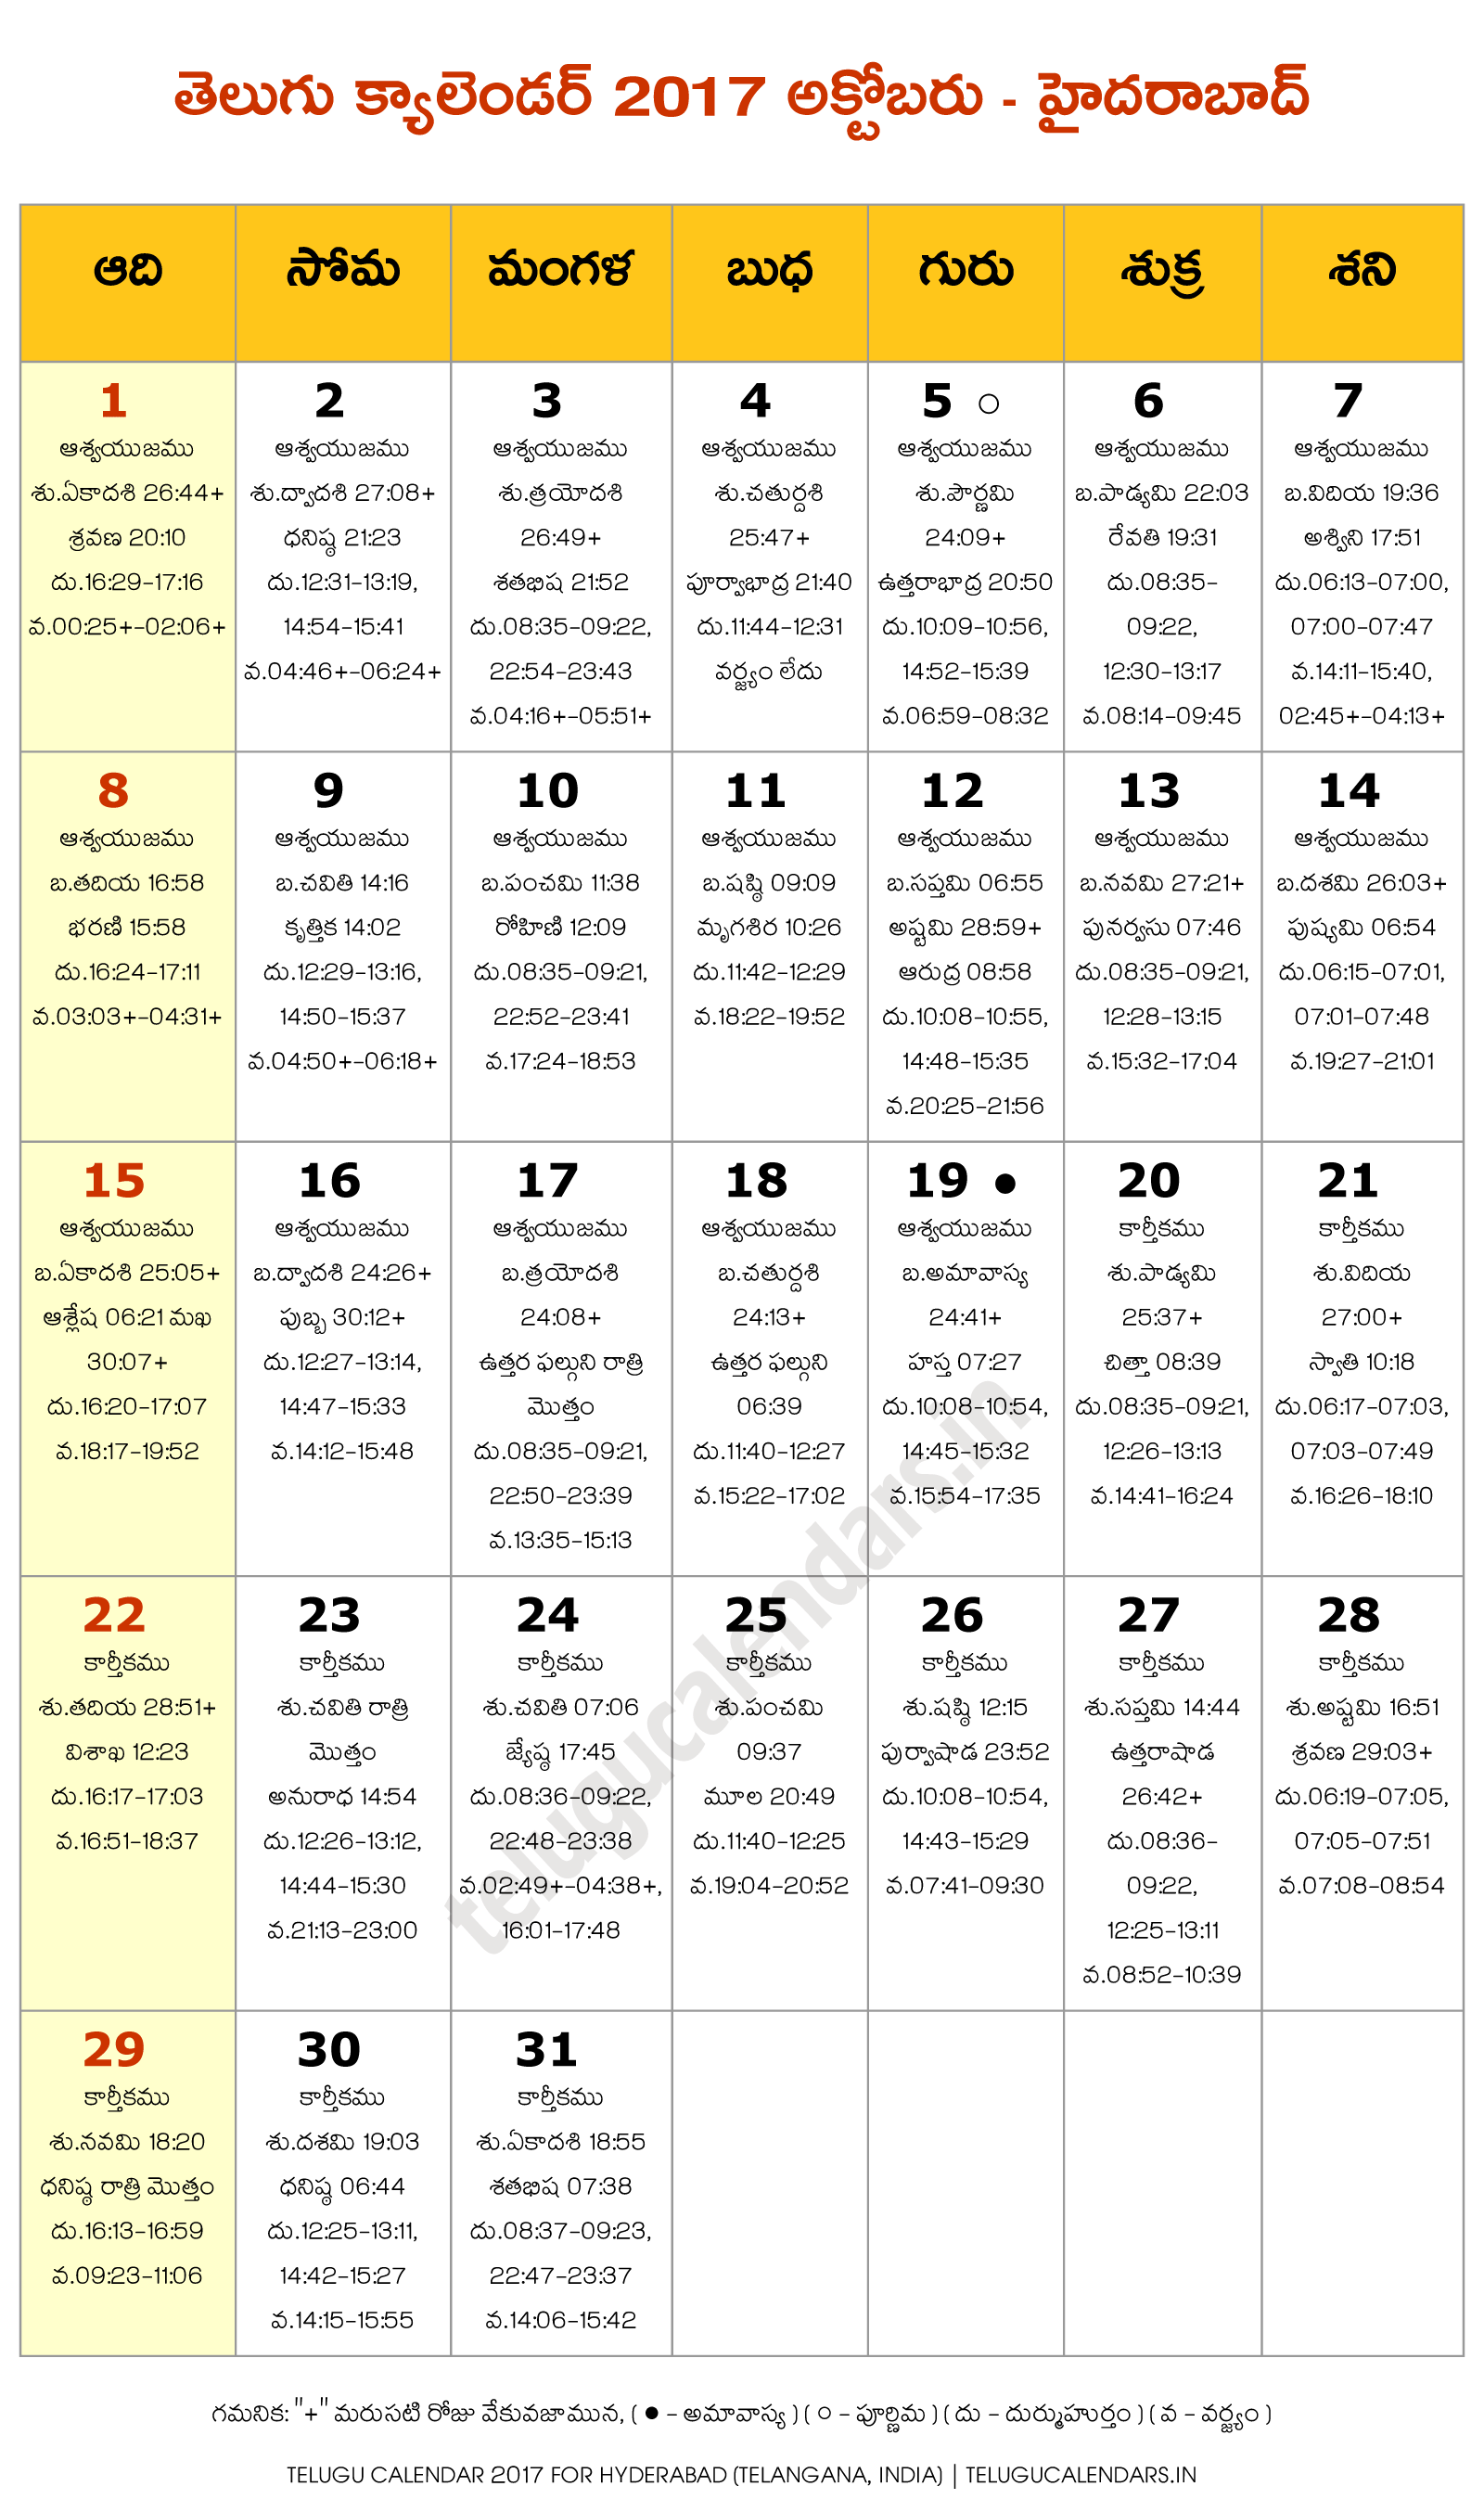 hyderabad-2017-october-telugu-calendar-telugu-calendars